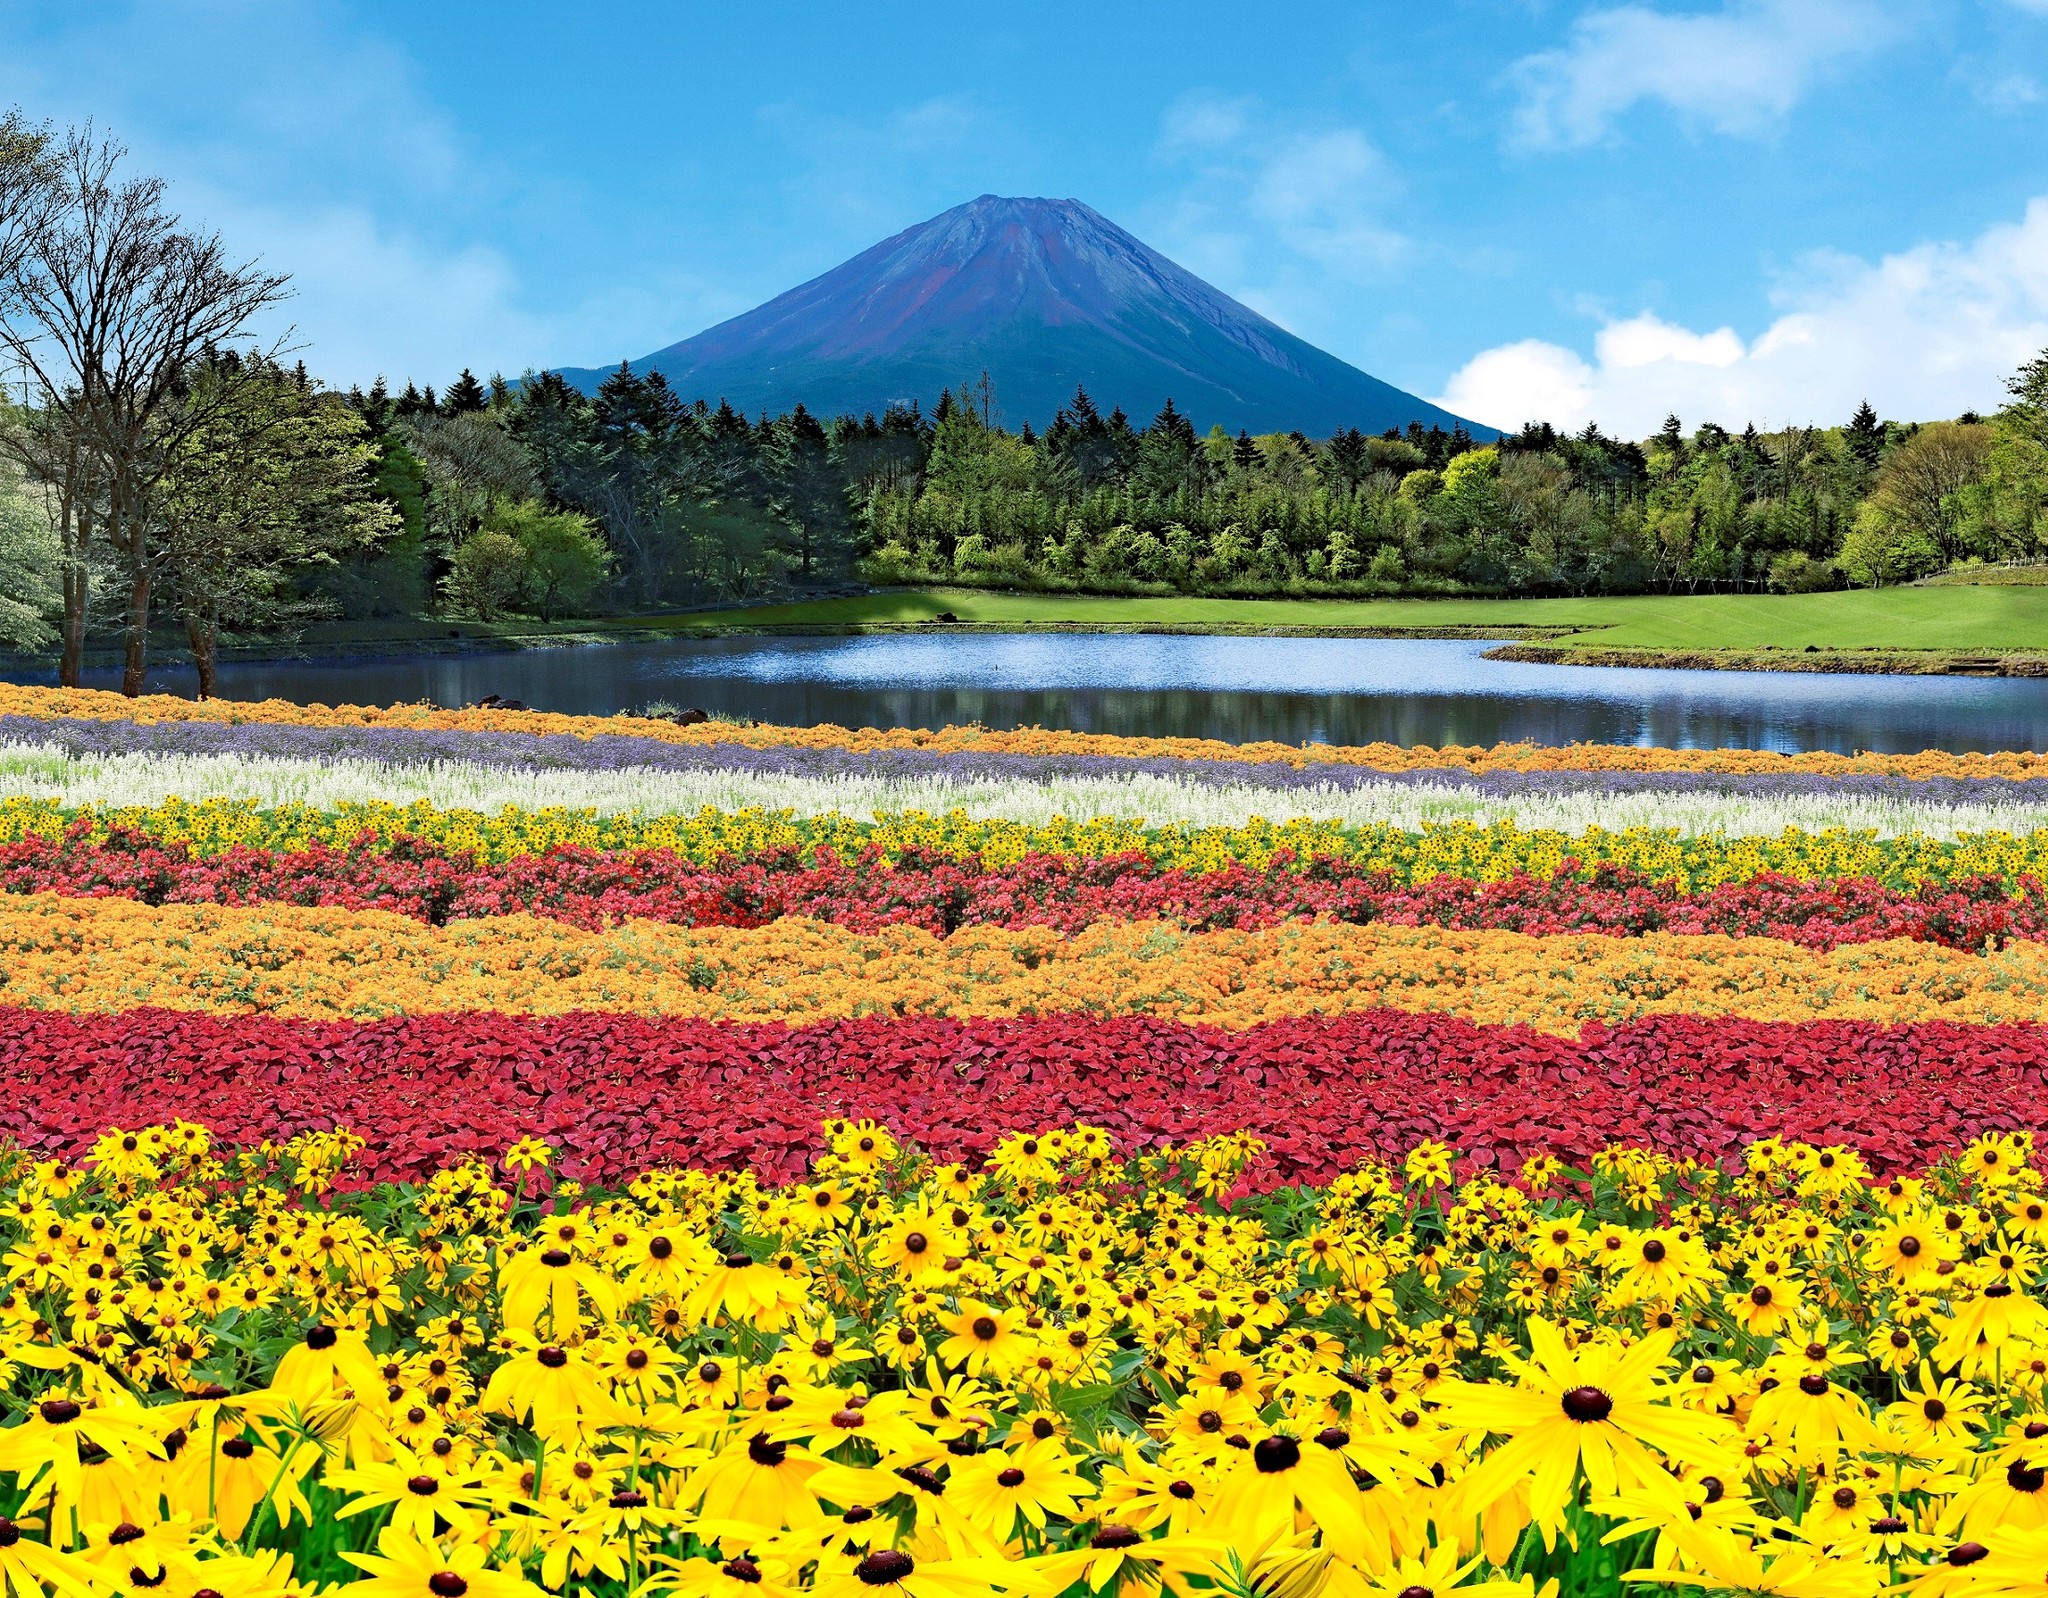 富士山とカラフルな花々の共演が楽しめる絶景花イベント 虹の花まつり 7月16日 土 より初開催 富士急行のプレスリリース